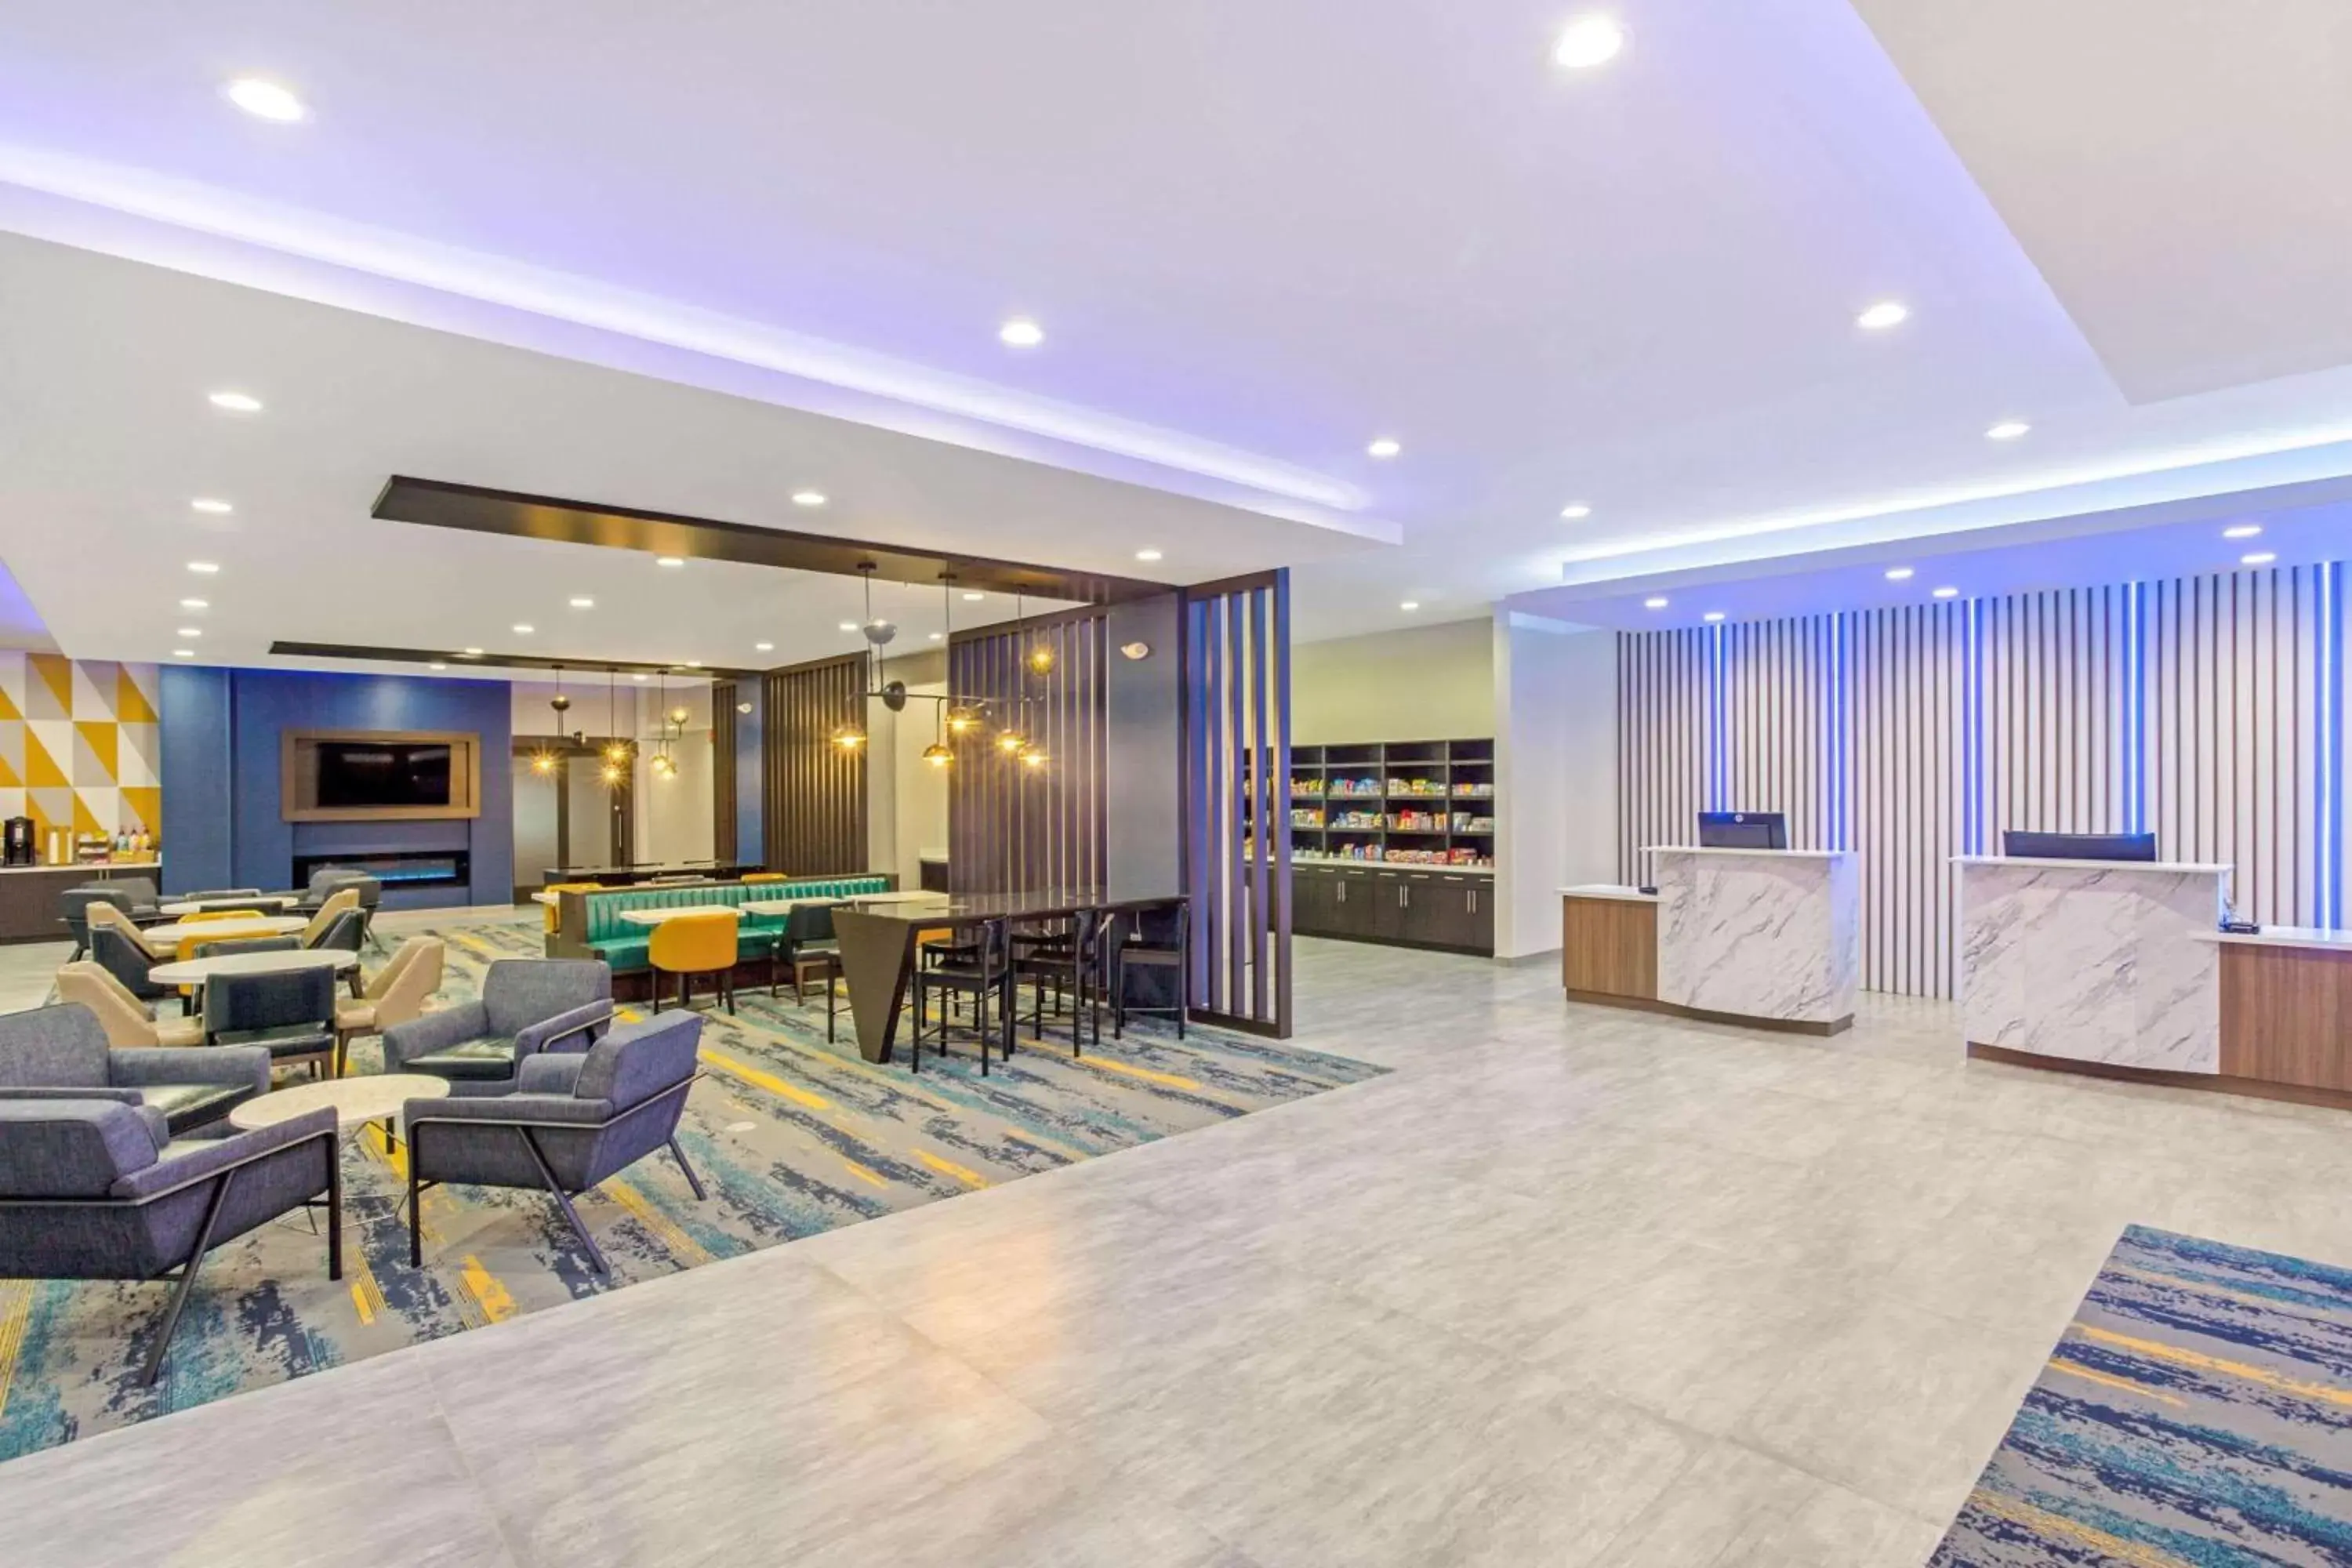 Lobby or reception, Lobby/Reception in La Quinta Inn & Suites by Wyndham Miramar Beach-Destin